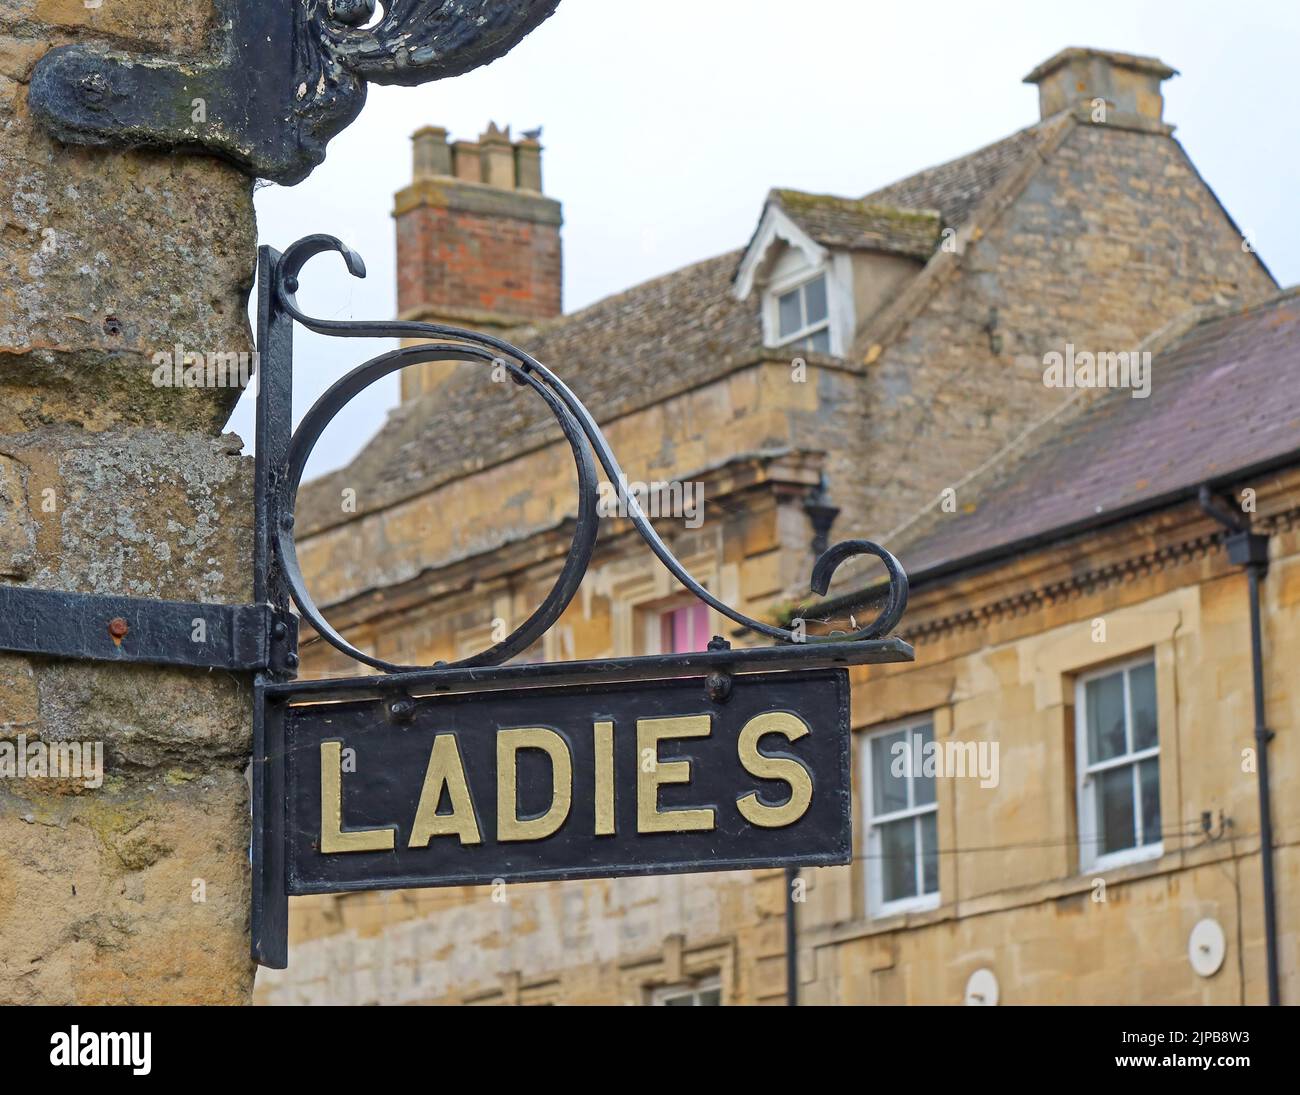 Commodités publiques panneau Ladies à la vieille mairie, Chipping Norton, West Oxfordshire, Angleterre, Royaume-Uni, OX7 5NA Banque D'Images